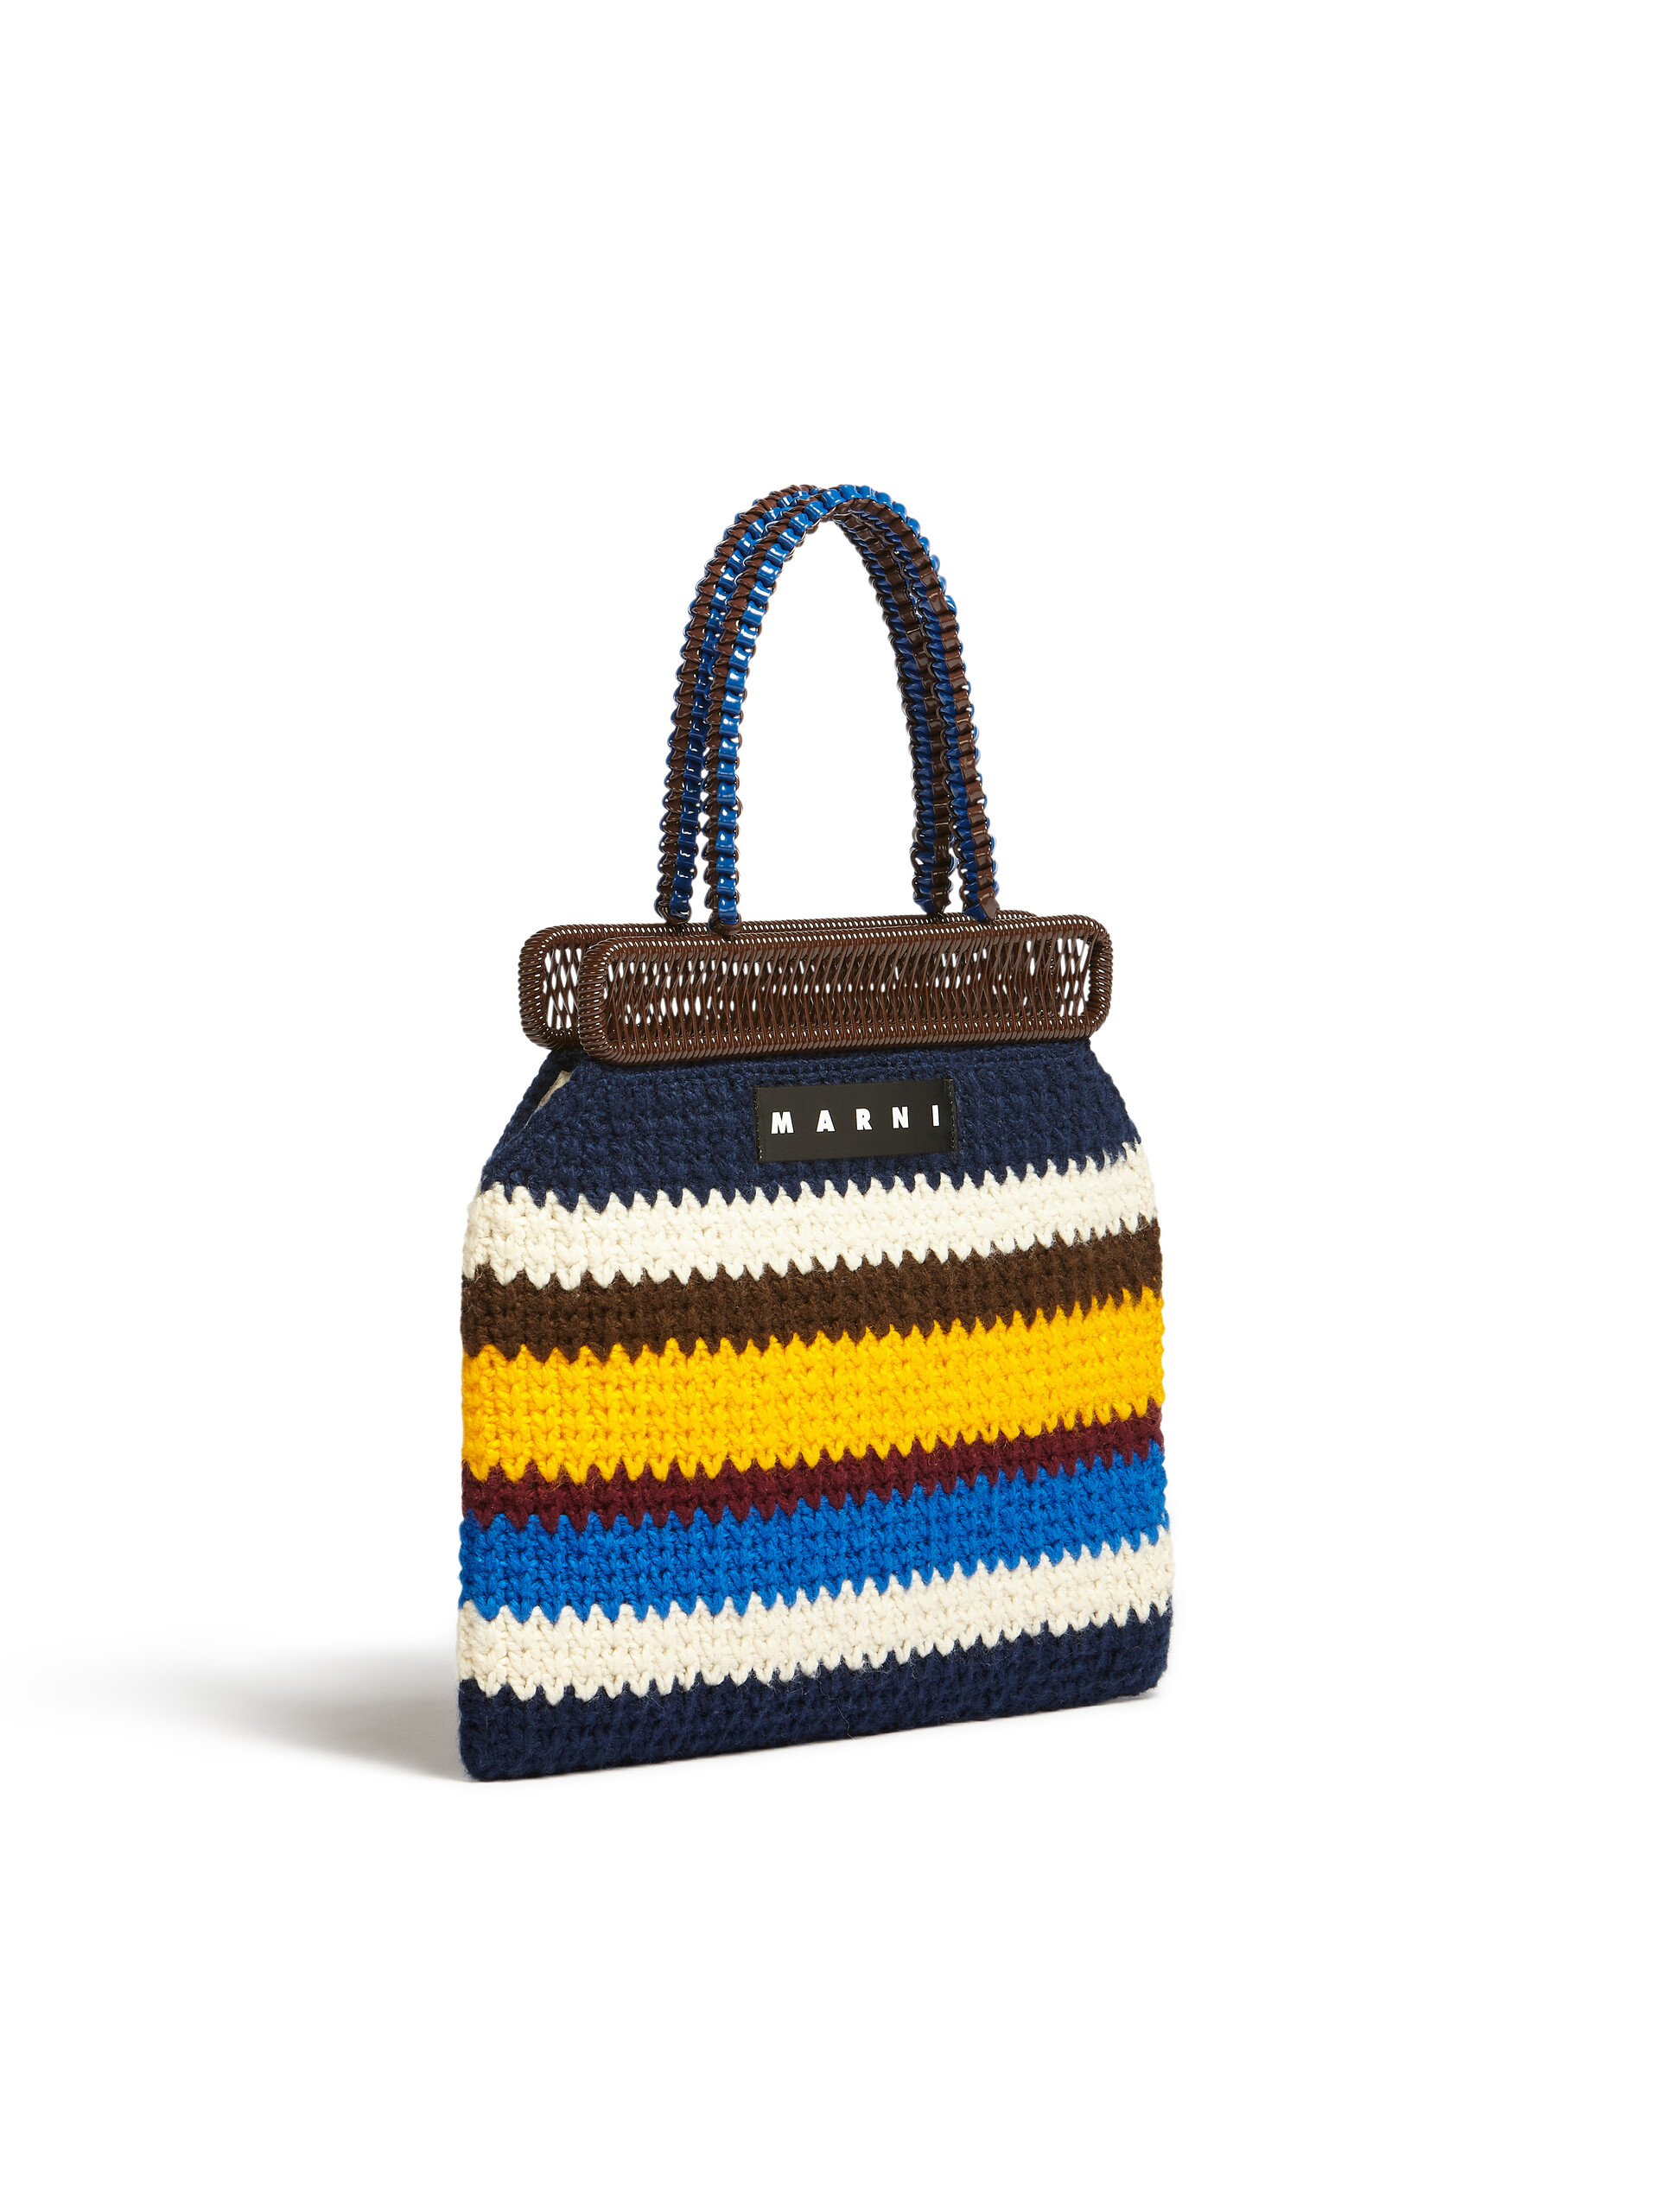 Borsa MARNI MARKET in lana crochet multicolore blu - Arredamento - Image 2